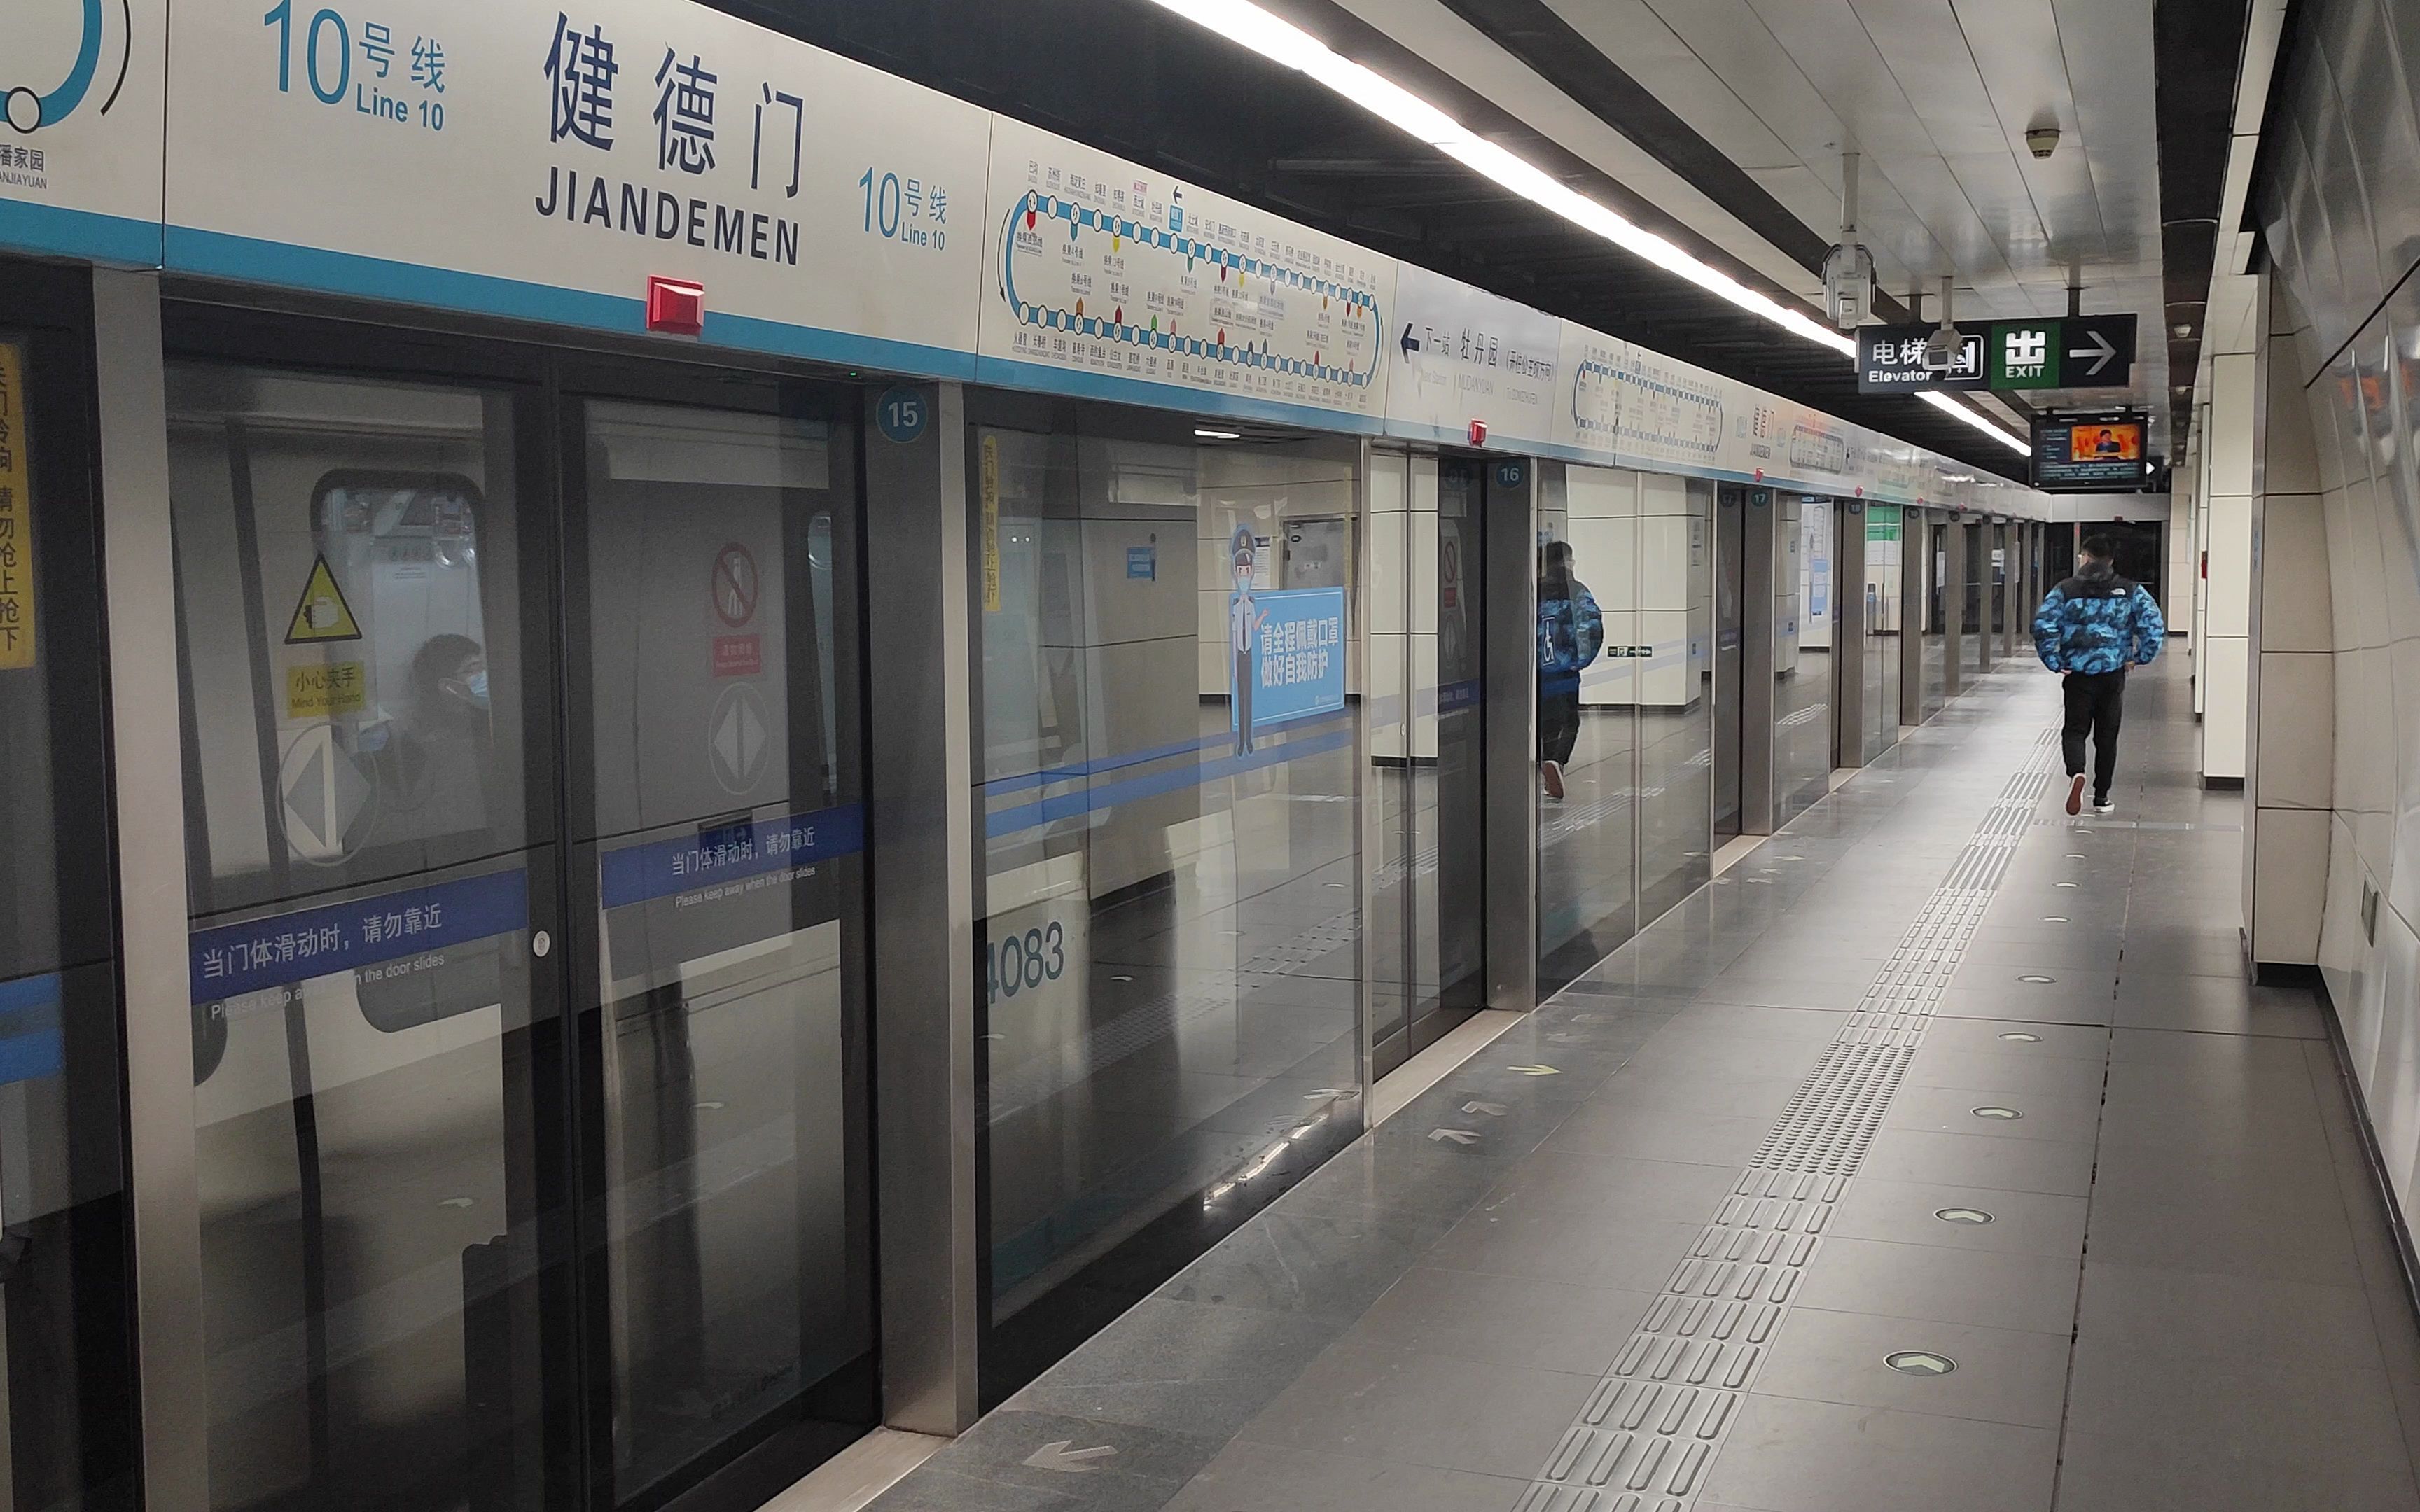 北京地铁10号线大红门图片